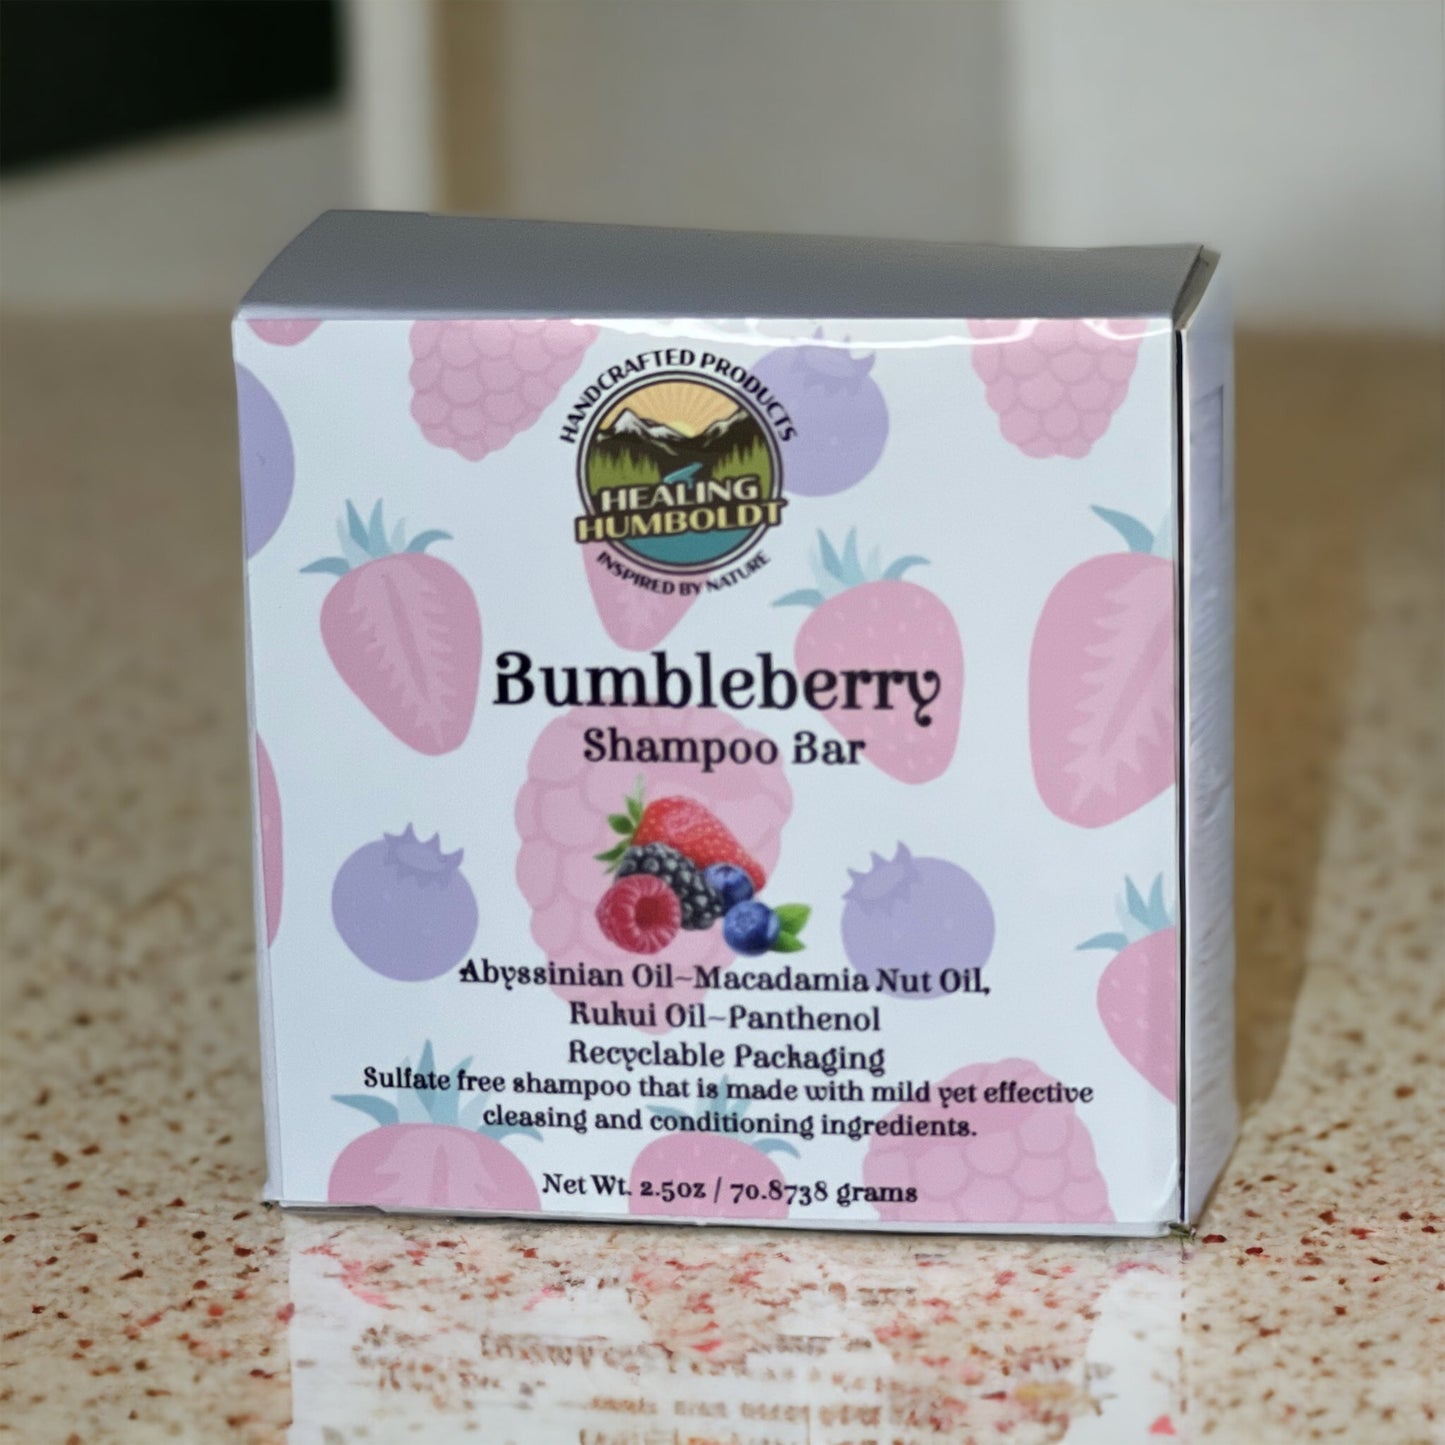 Bumbleberry Shampoo Bar